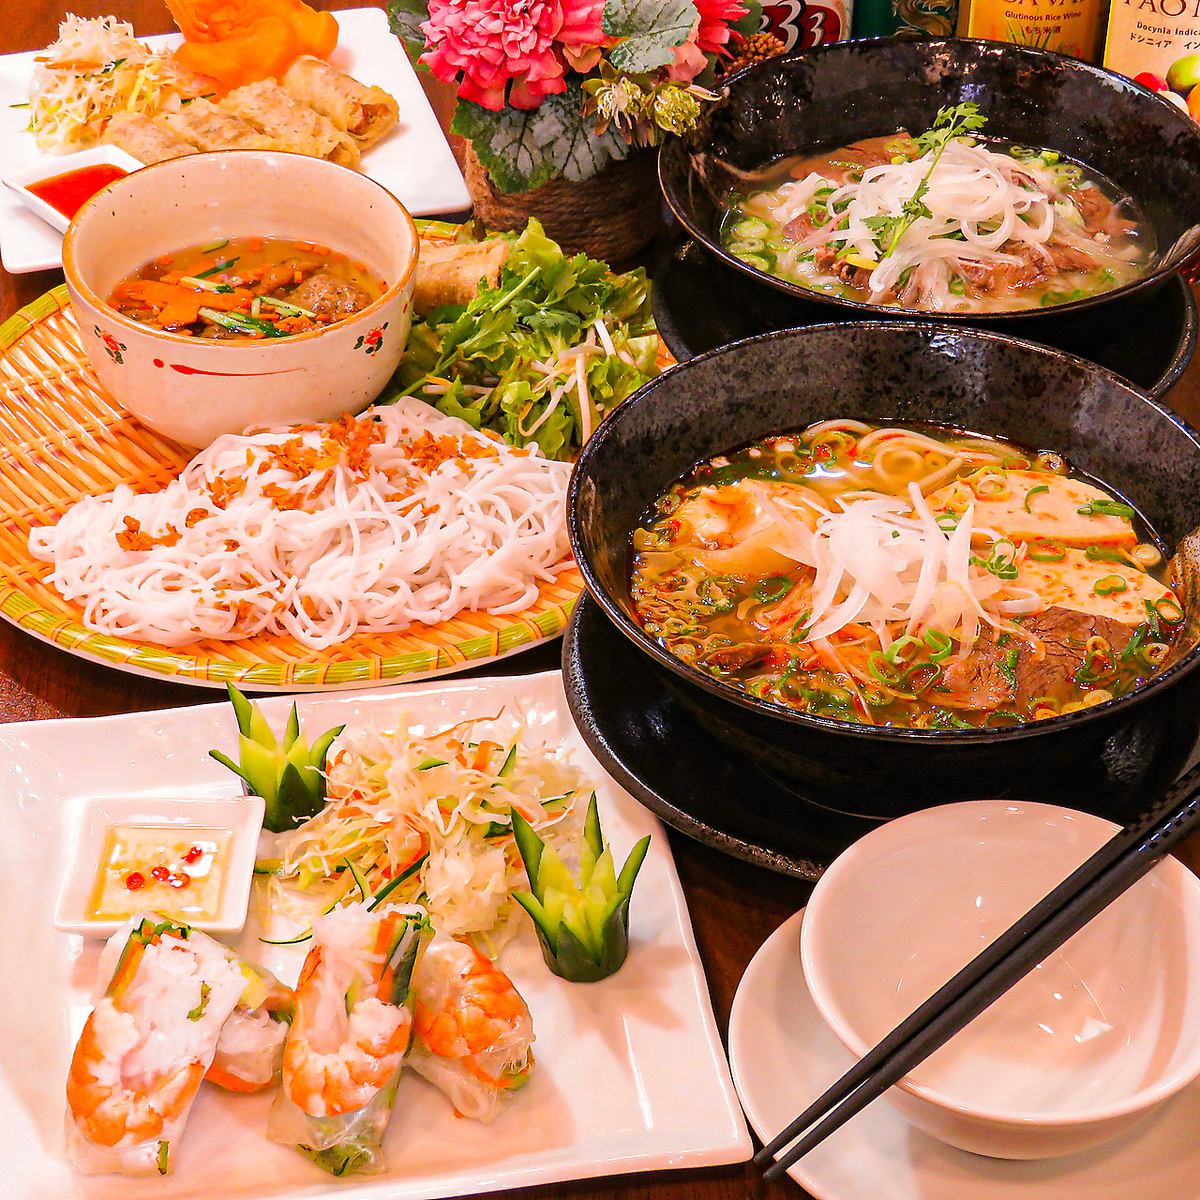 번화가에서 한층 더 존재감을 발하는 본격 베트남 요리 전문점 ◆호화 VIP룸 가라오케 완비!